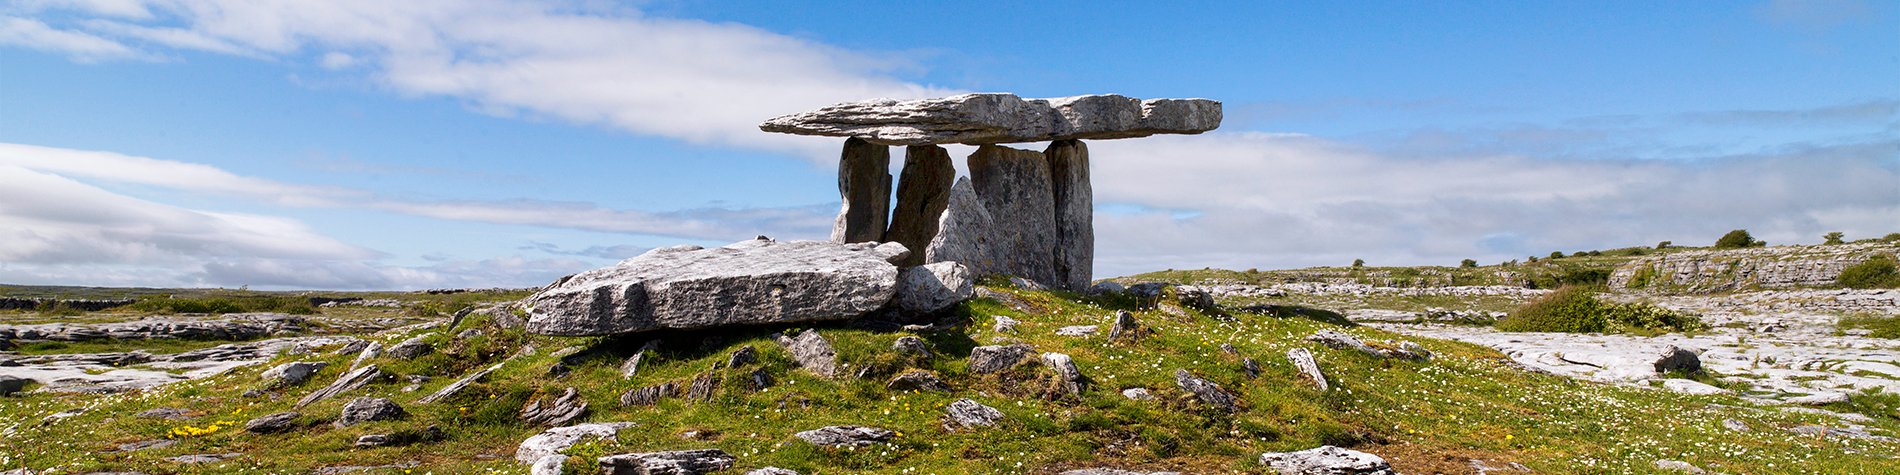 Poulnabrone dolmen in The Burren - Clare, Ireland 